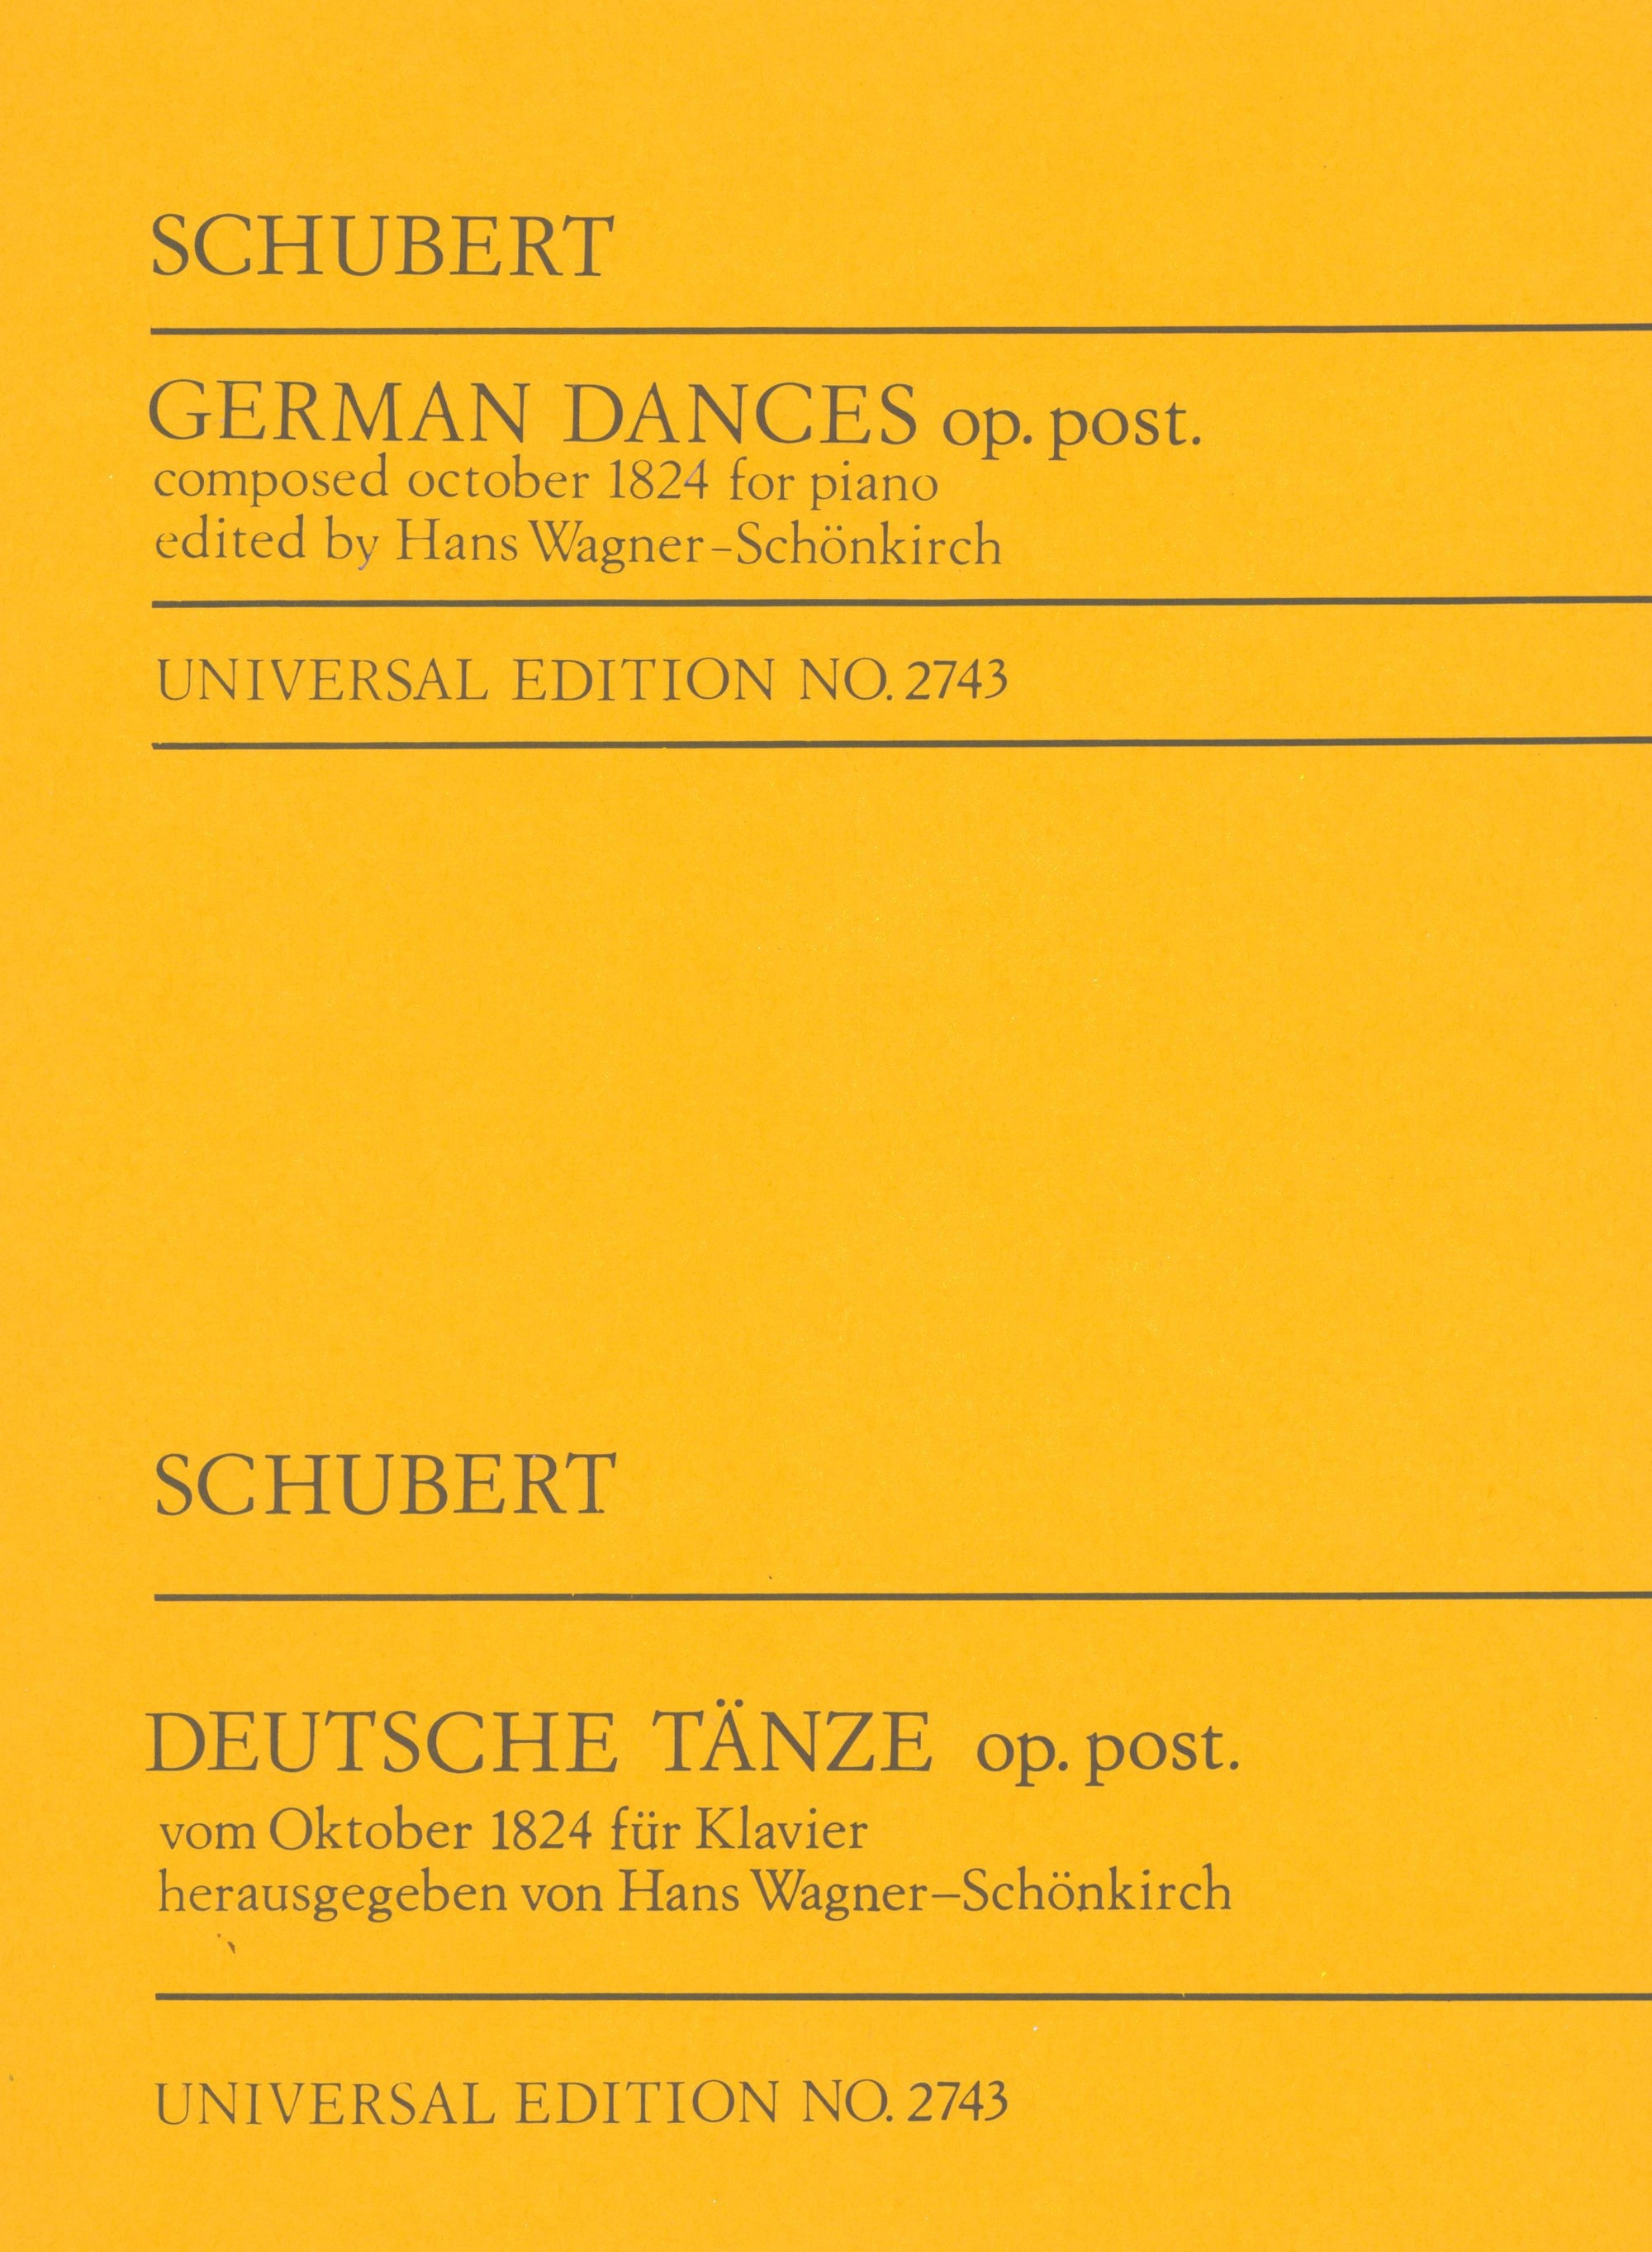 Schubert: 6 German Dances, D 820, Op. posth.